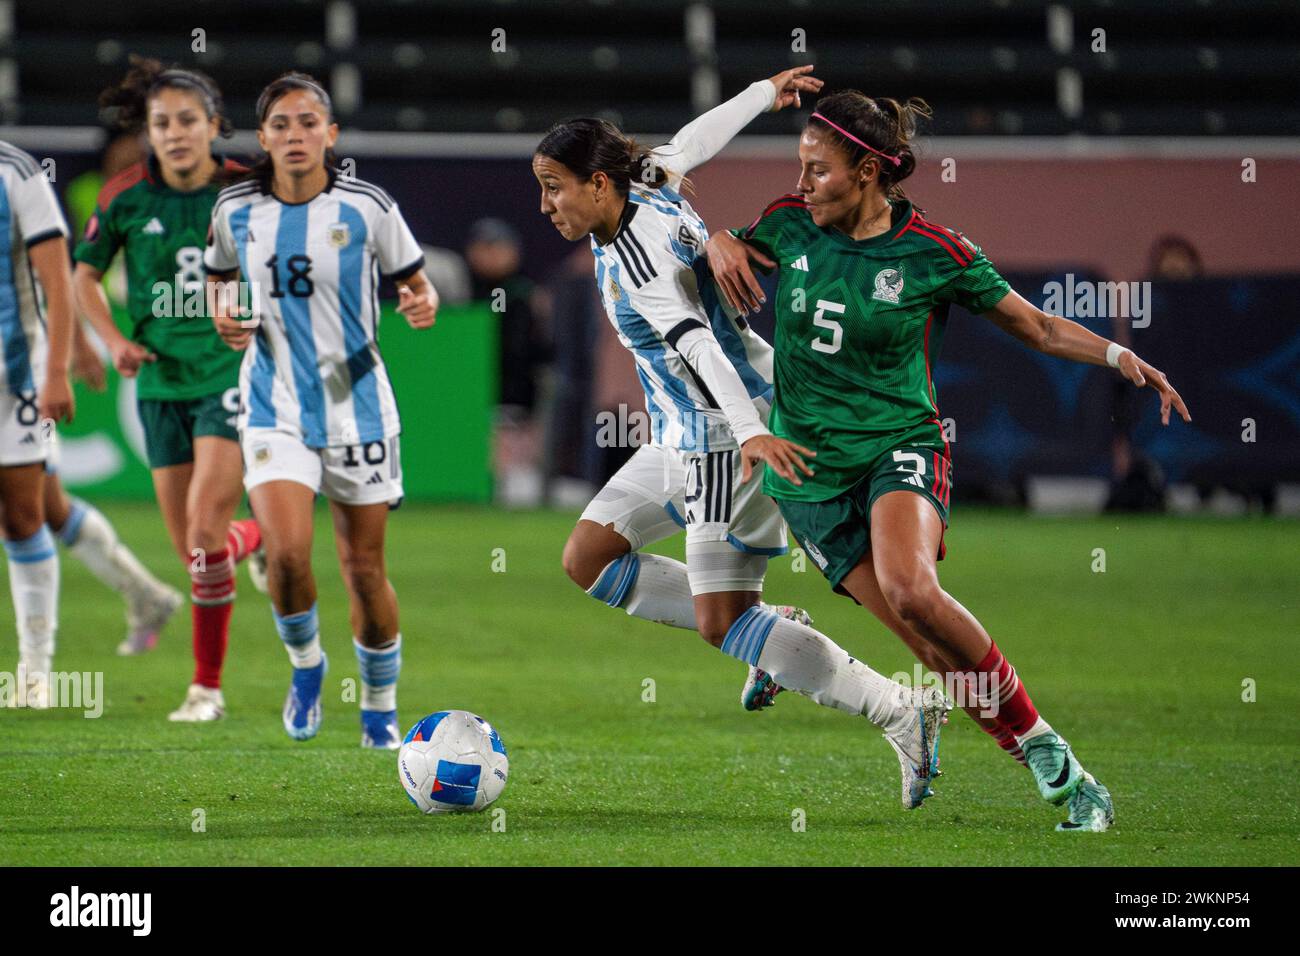 Der argentinische Mittelfeldspieler Dalila Ippólito (10) wird am Dienstag, Februar, im CONCACACAF W Gold Cup Gruppe A von der mexikanischen Verteidigerin Karen Luna (5) verteidigt Stockfoto